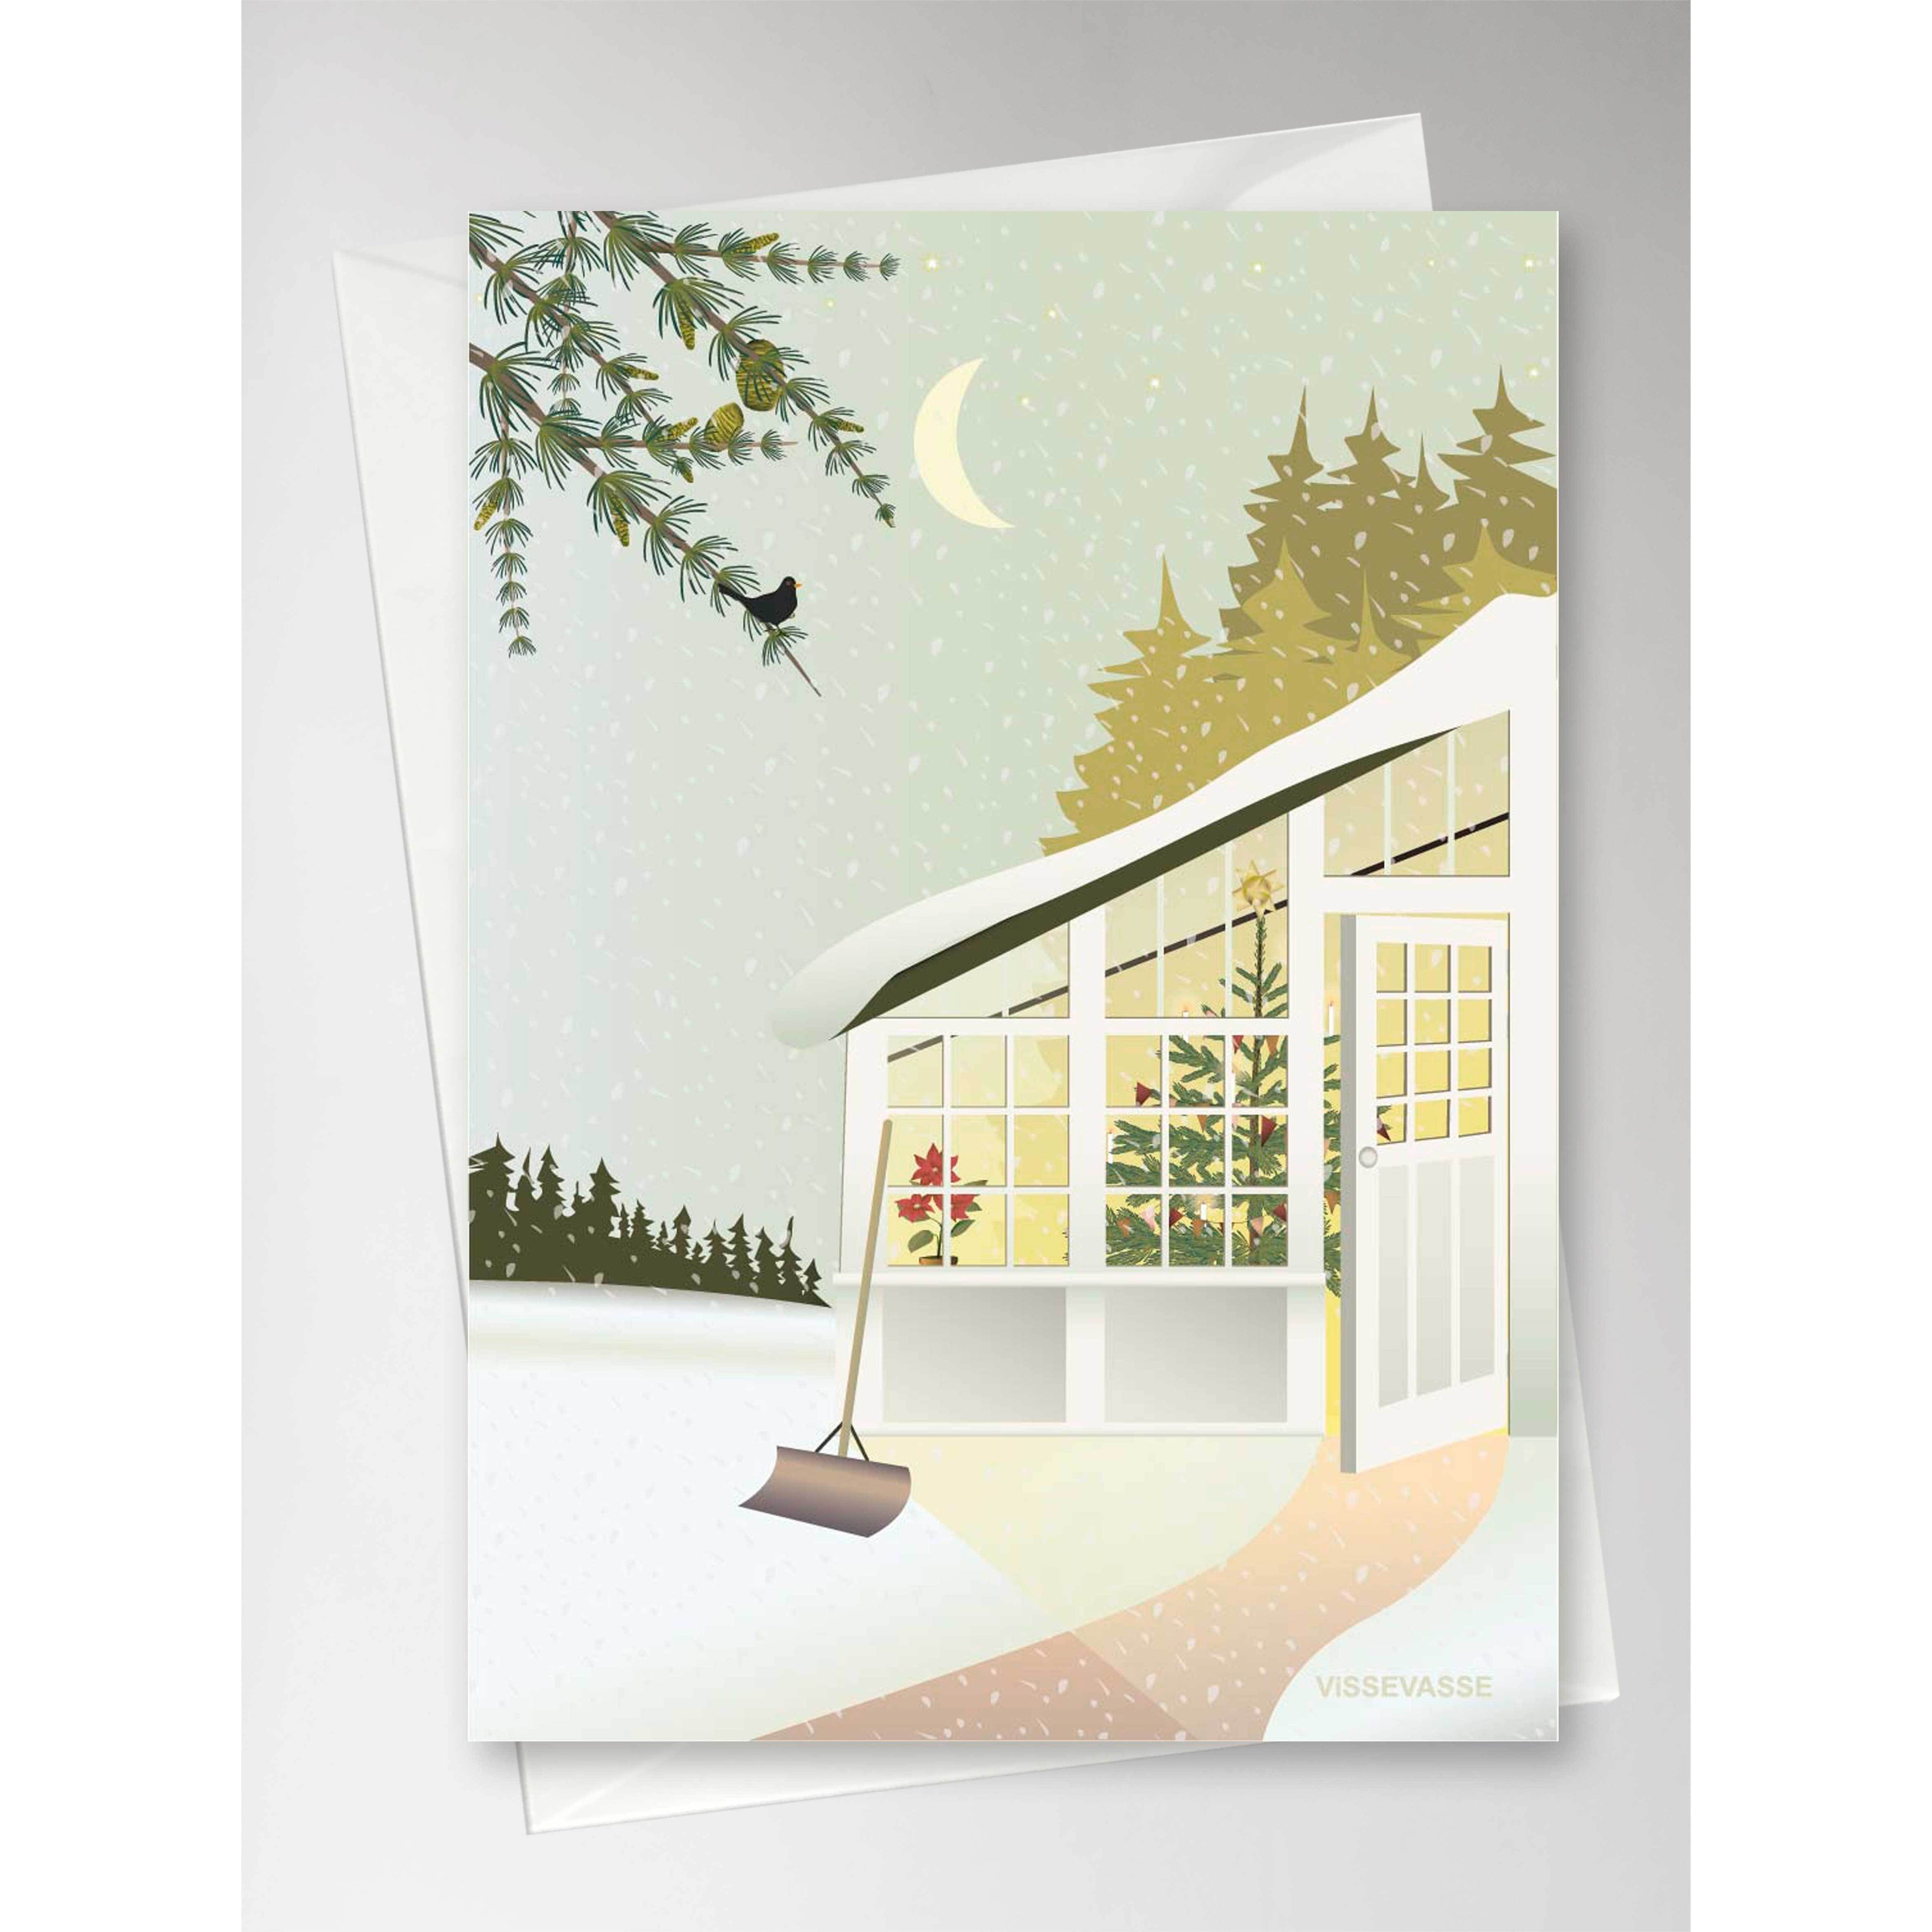 Navidad Vissevasse en la tarjeta de felicitación del invernadero, 10,5x15 cm